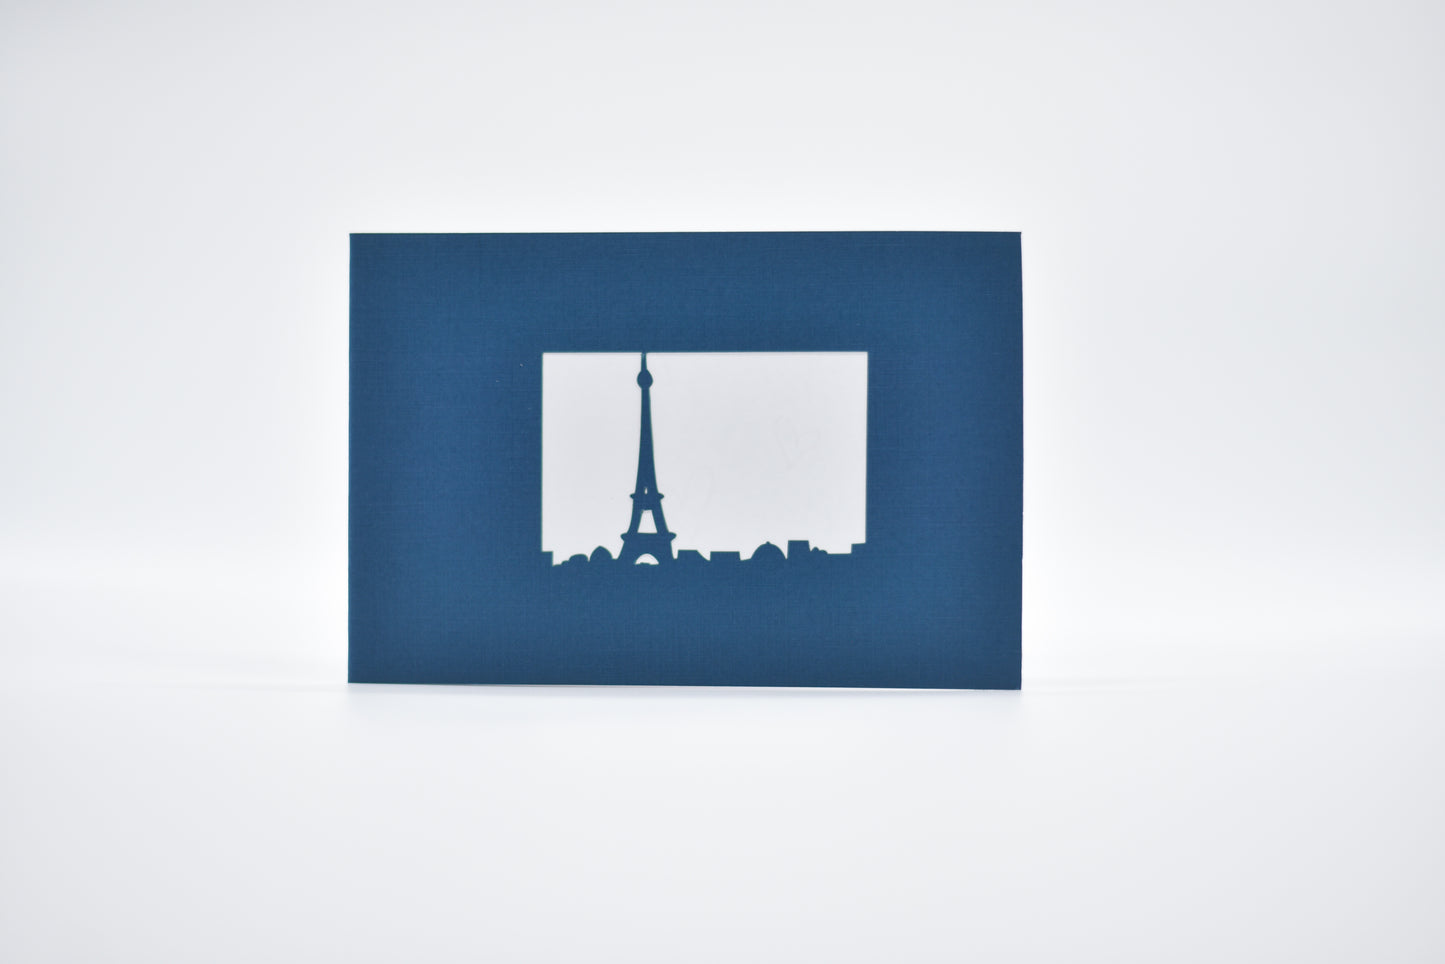 Eiffel Tower Pop Up Card